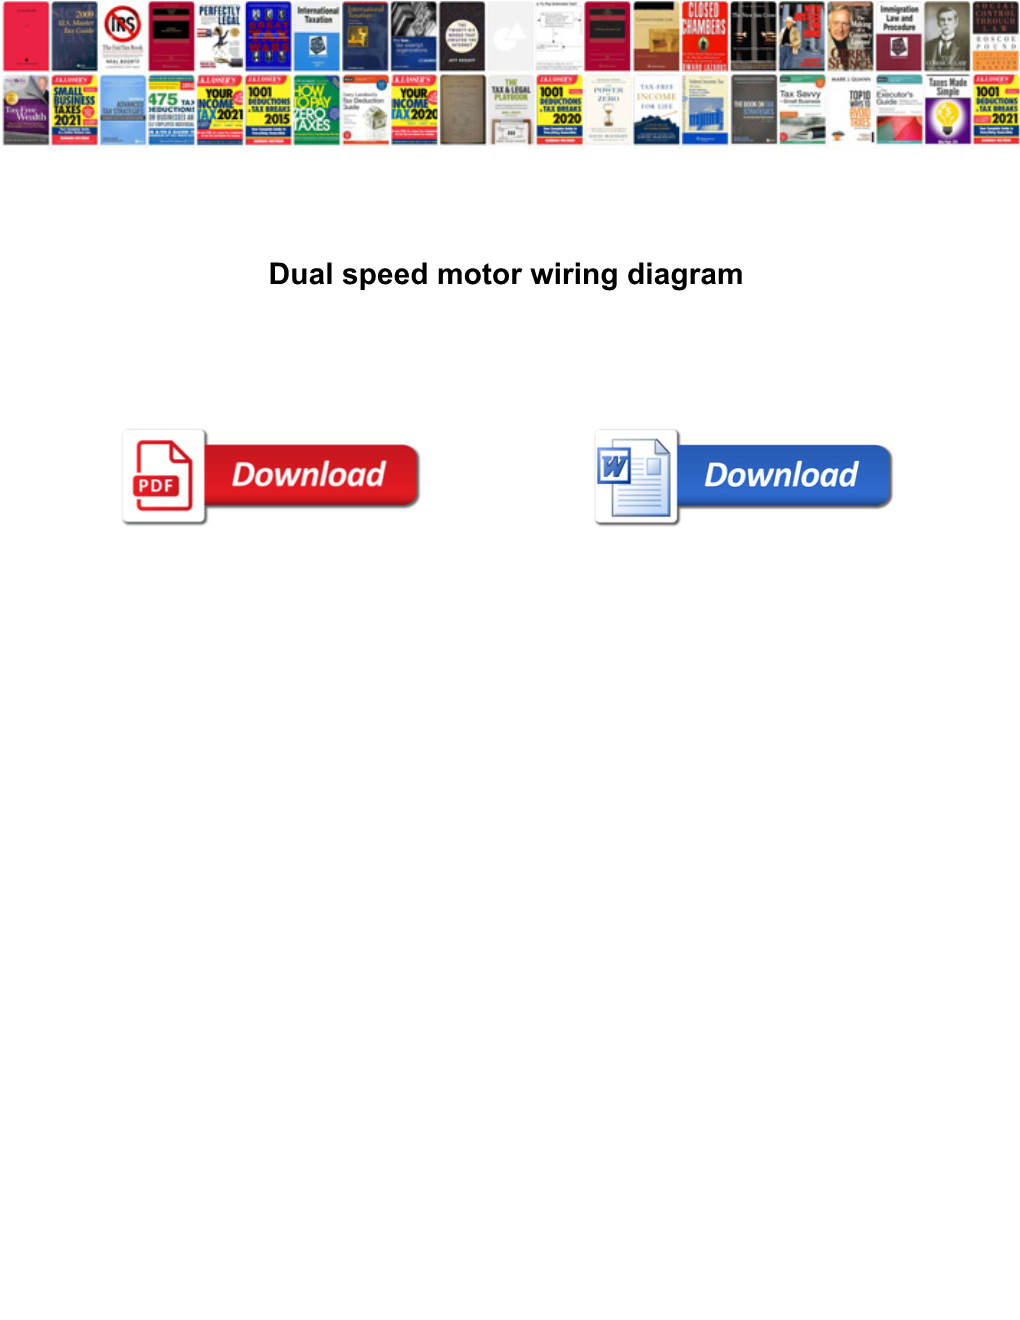 Dual Speed Motor Wiring Diagram